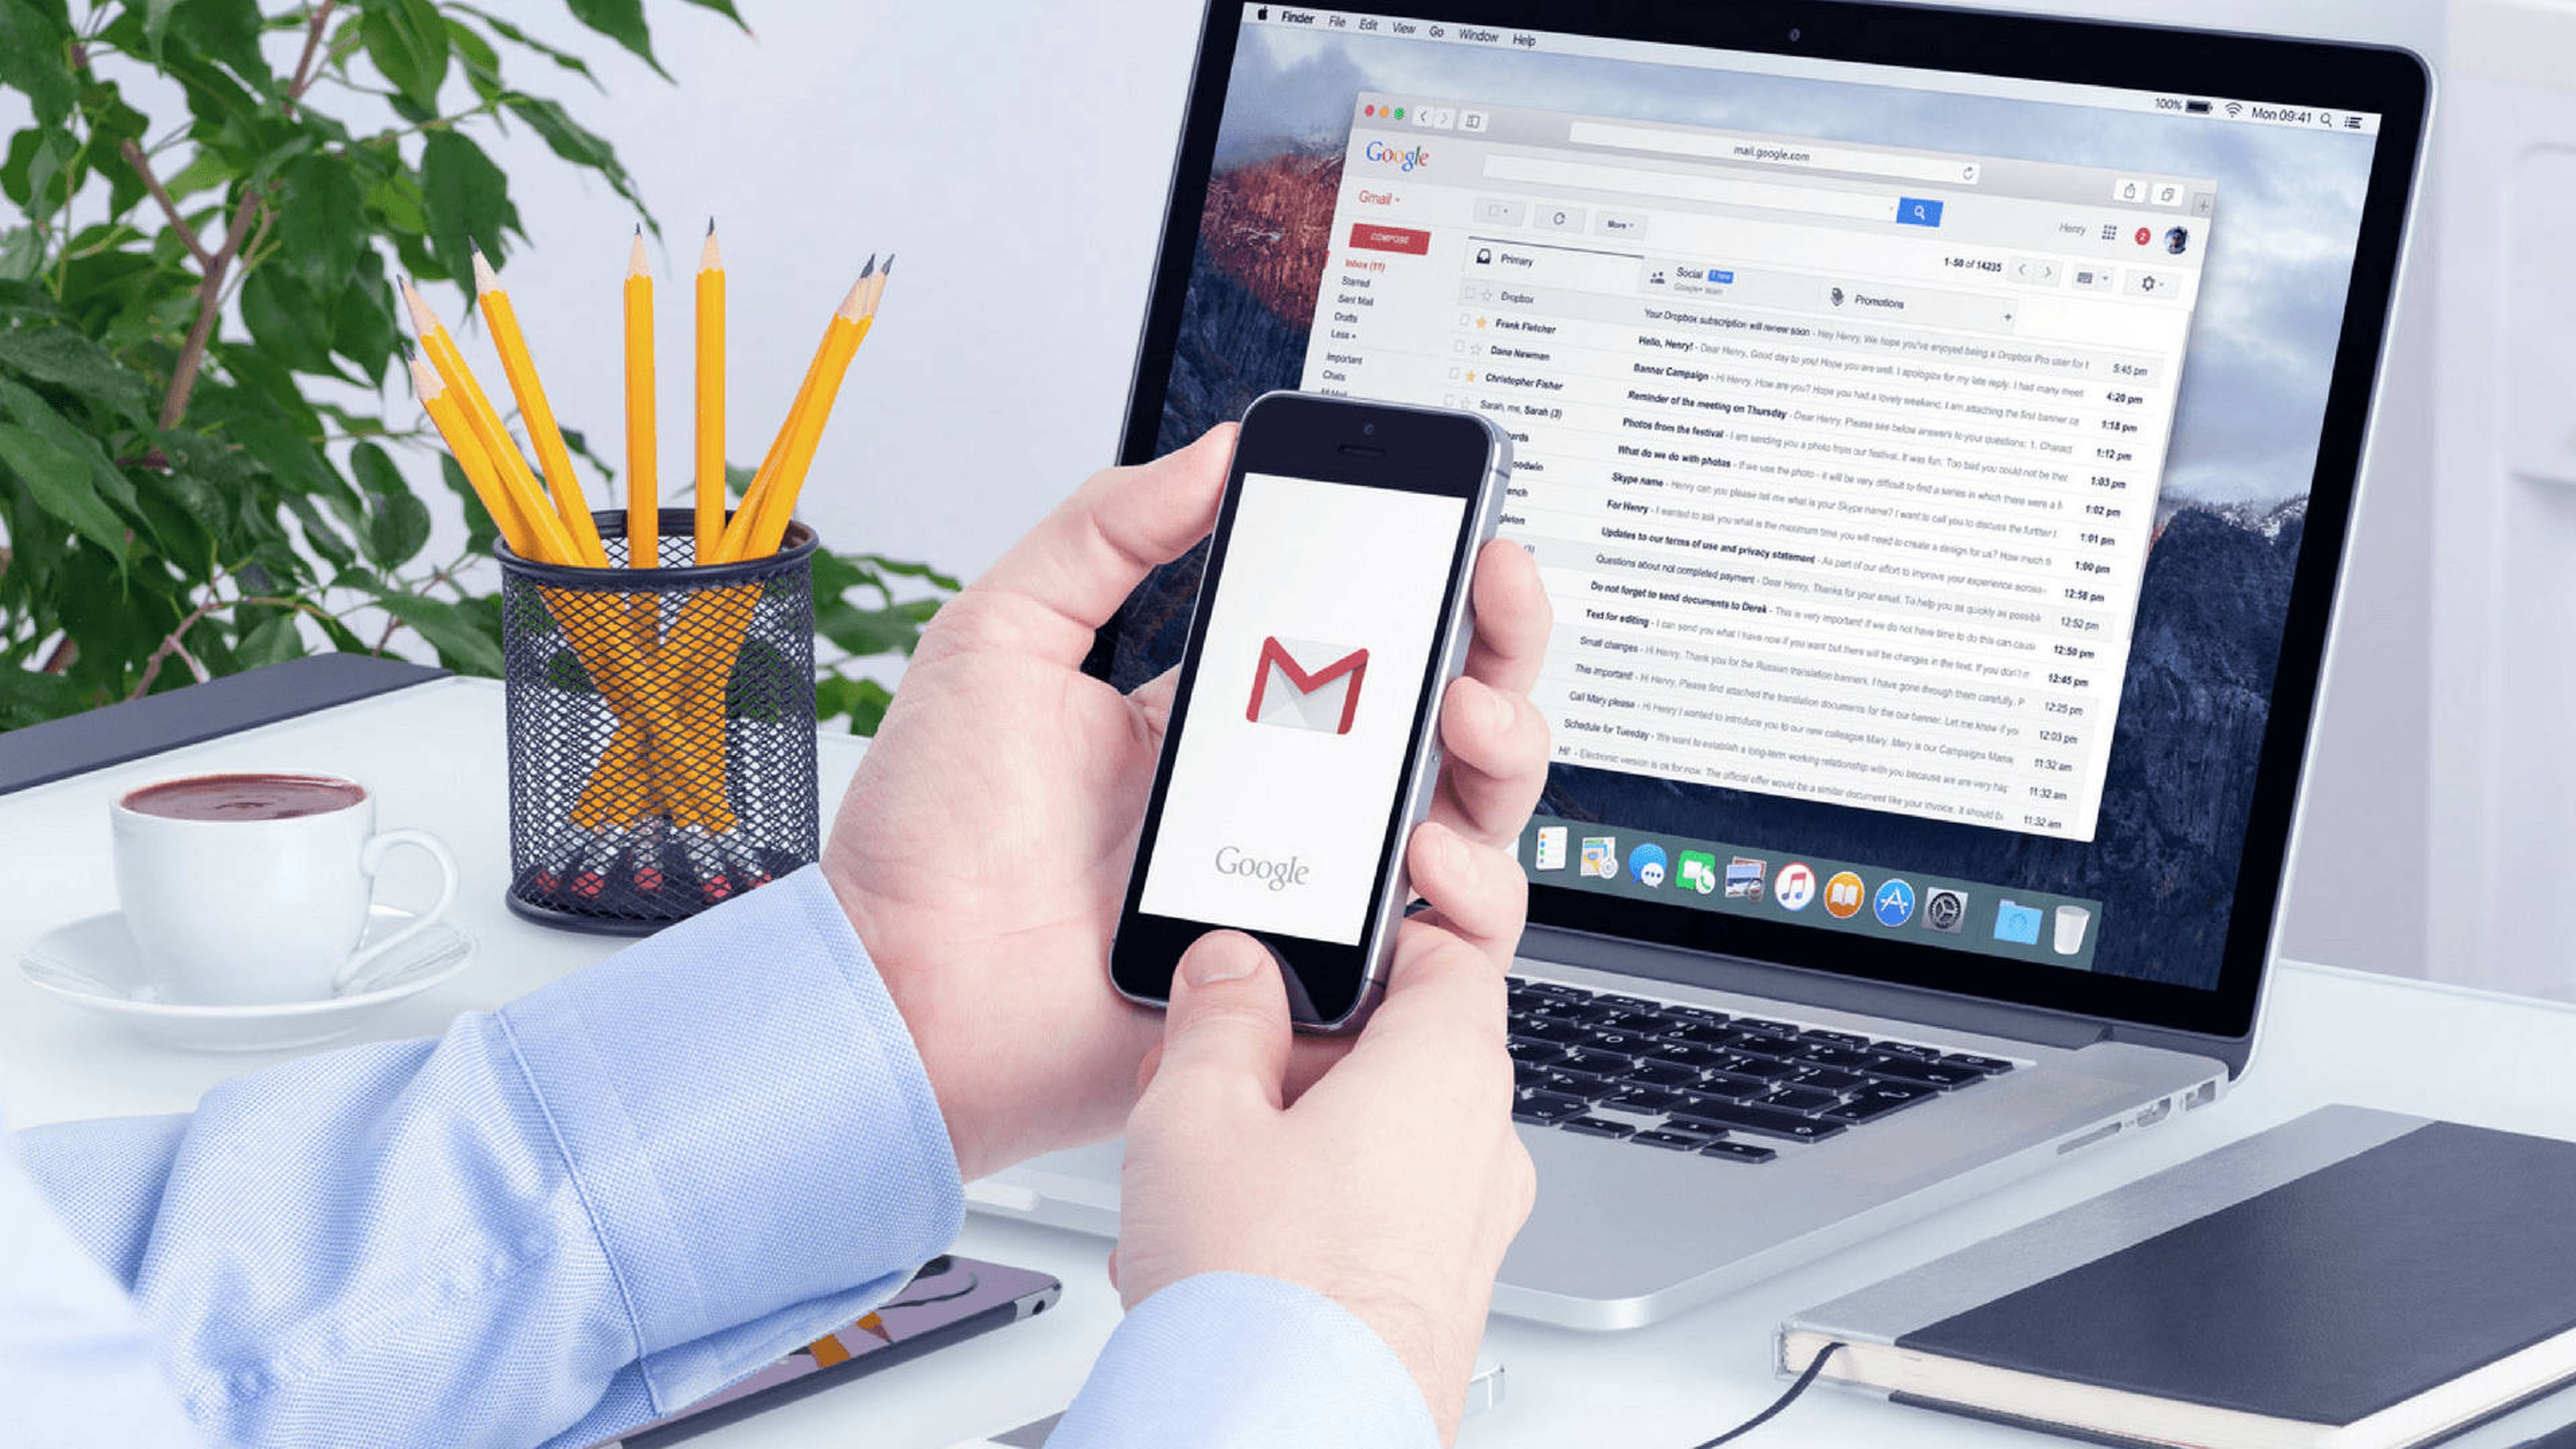 Hubert Hudson Buena voluntad ama de casa Cómo abrir el correo de Gmail desde el móvil | Computer Hoy